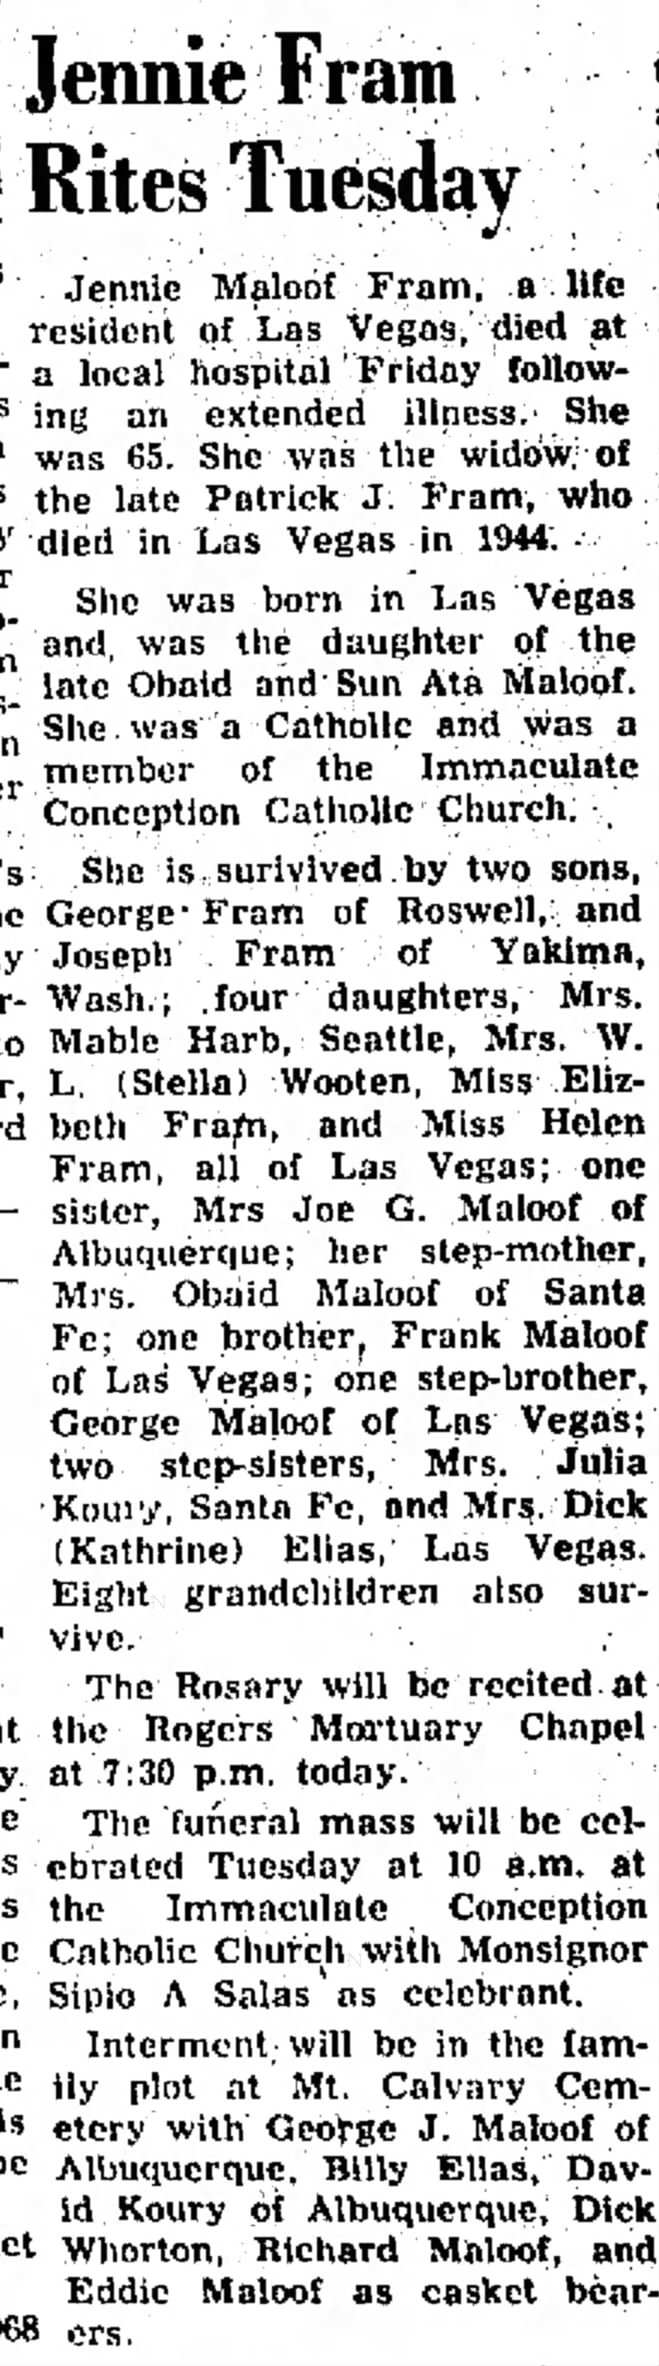 Jennie Fram obit
1 Apr 1968
Monday
Page 2
Las Vegas Optic